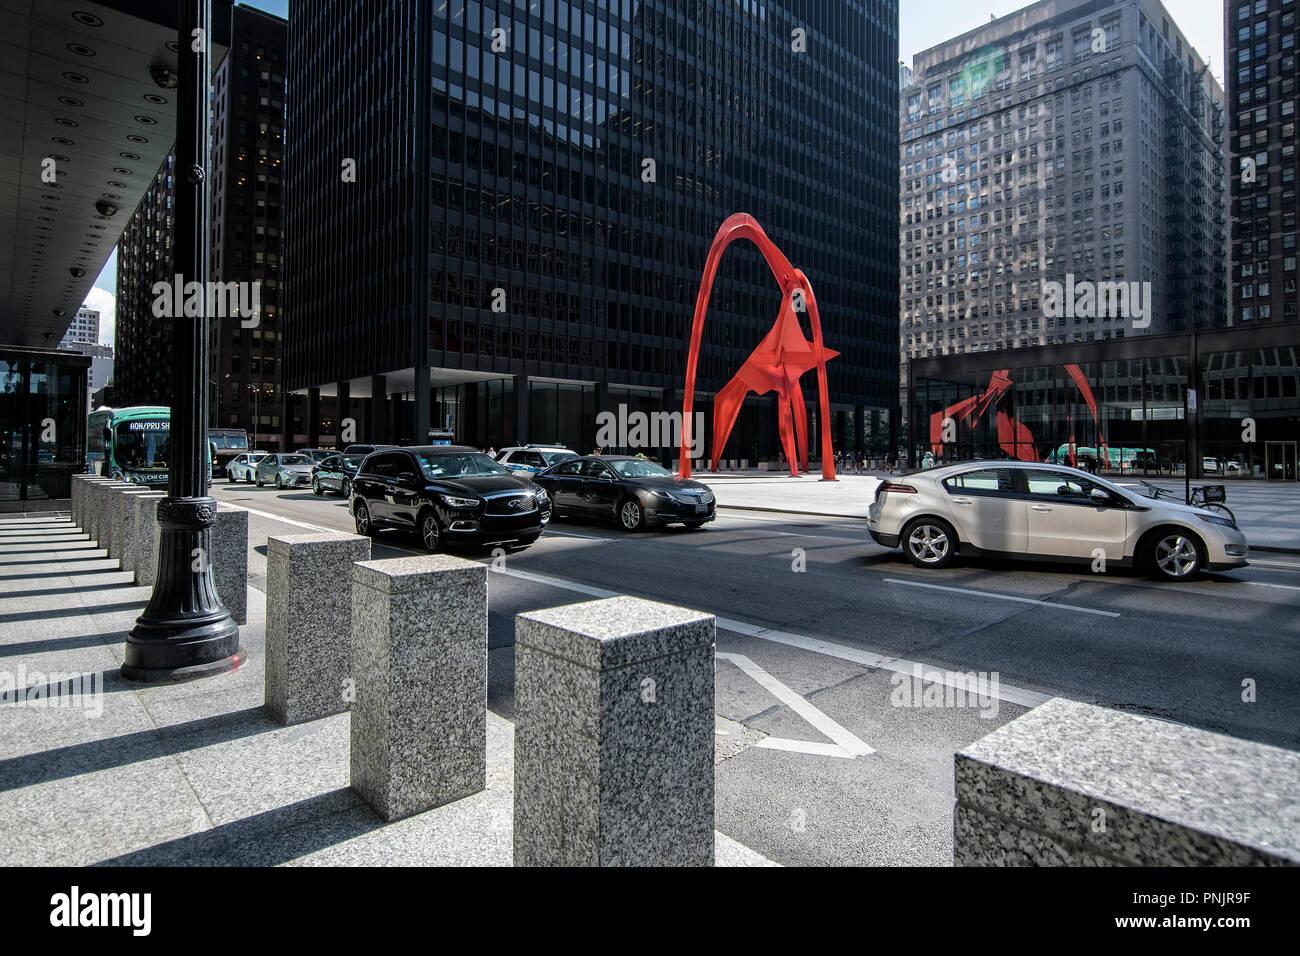 Flamingo sculpture par l'artiste américain Alexander Calder au gouvernement fédéral, le centre-ville de Plaza Chicago, IL. Banque D'Images